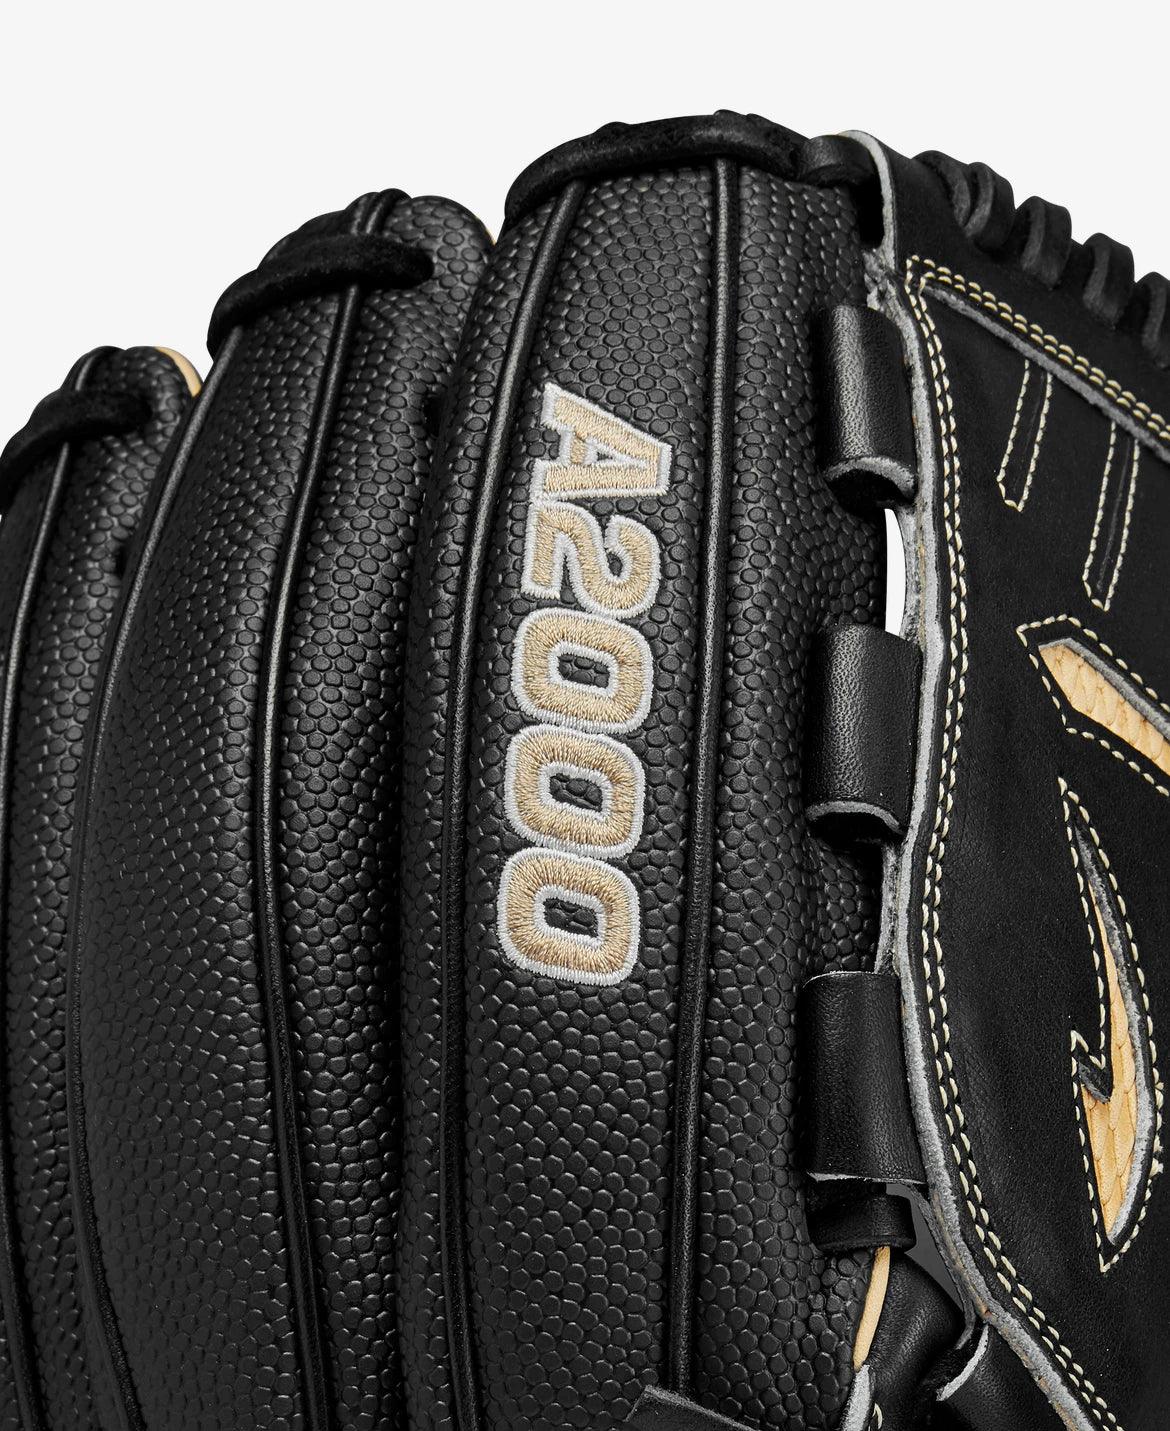 Wilson B23SS A2000 12” Pitcher Black Blonde Glove - CustomBallgloves.com